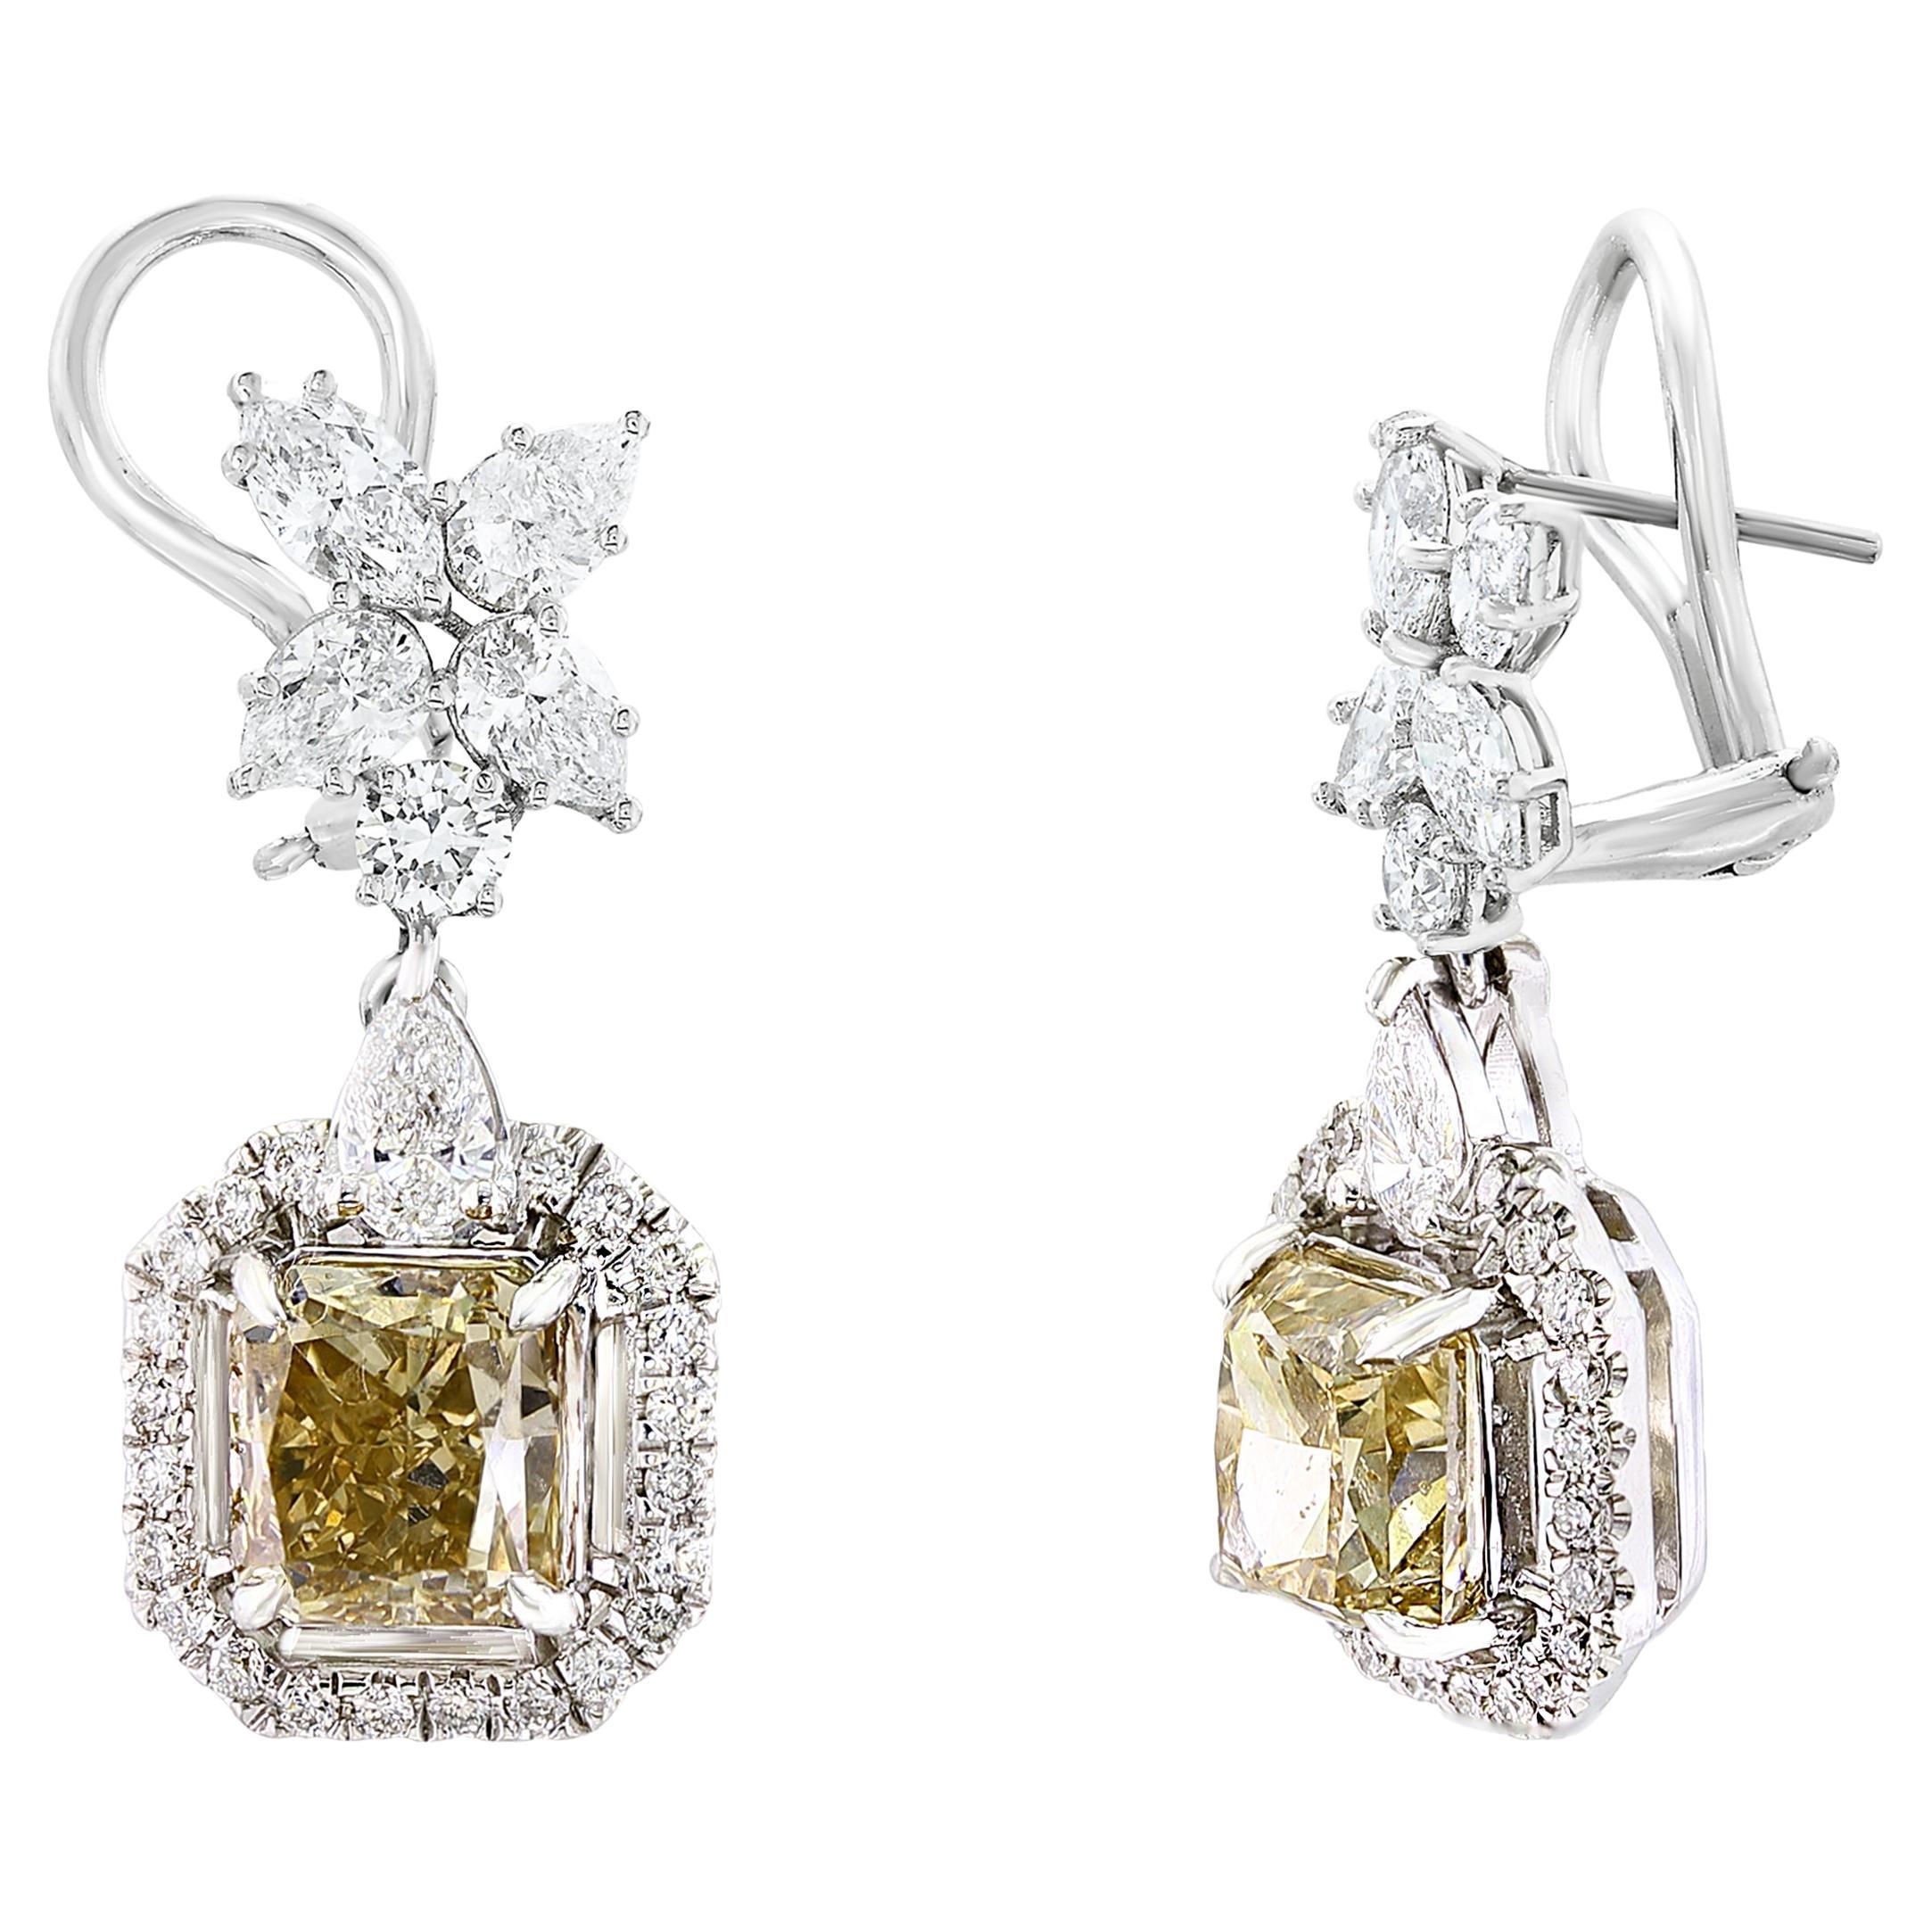 4.50 Carat Fancy Brown Diamond and Diamond Drop Earrings in 18K White Gold